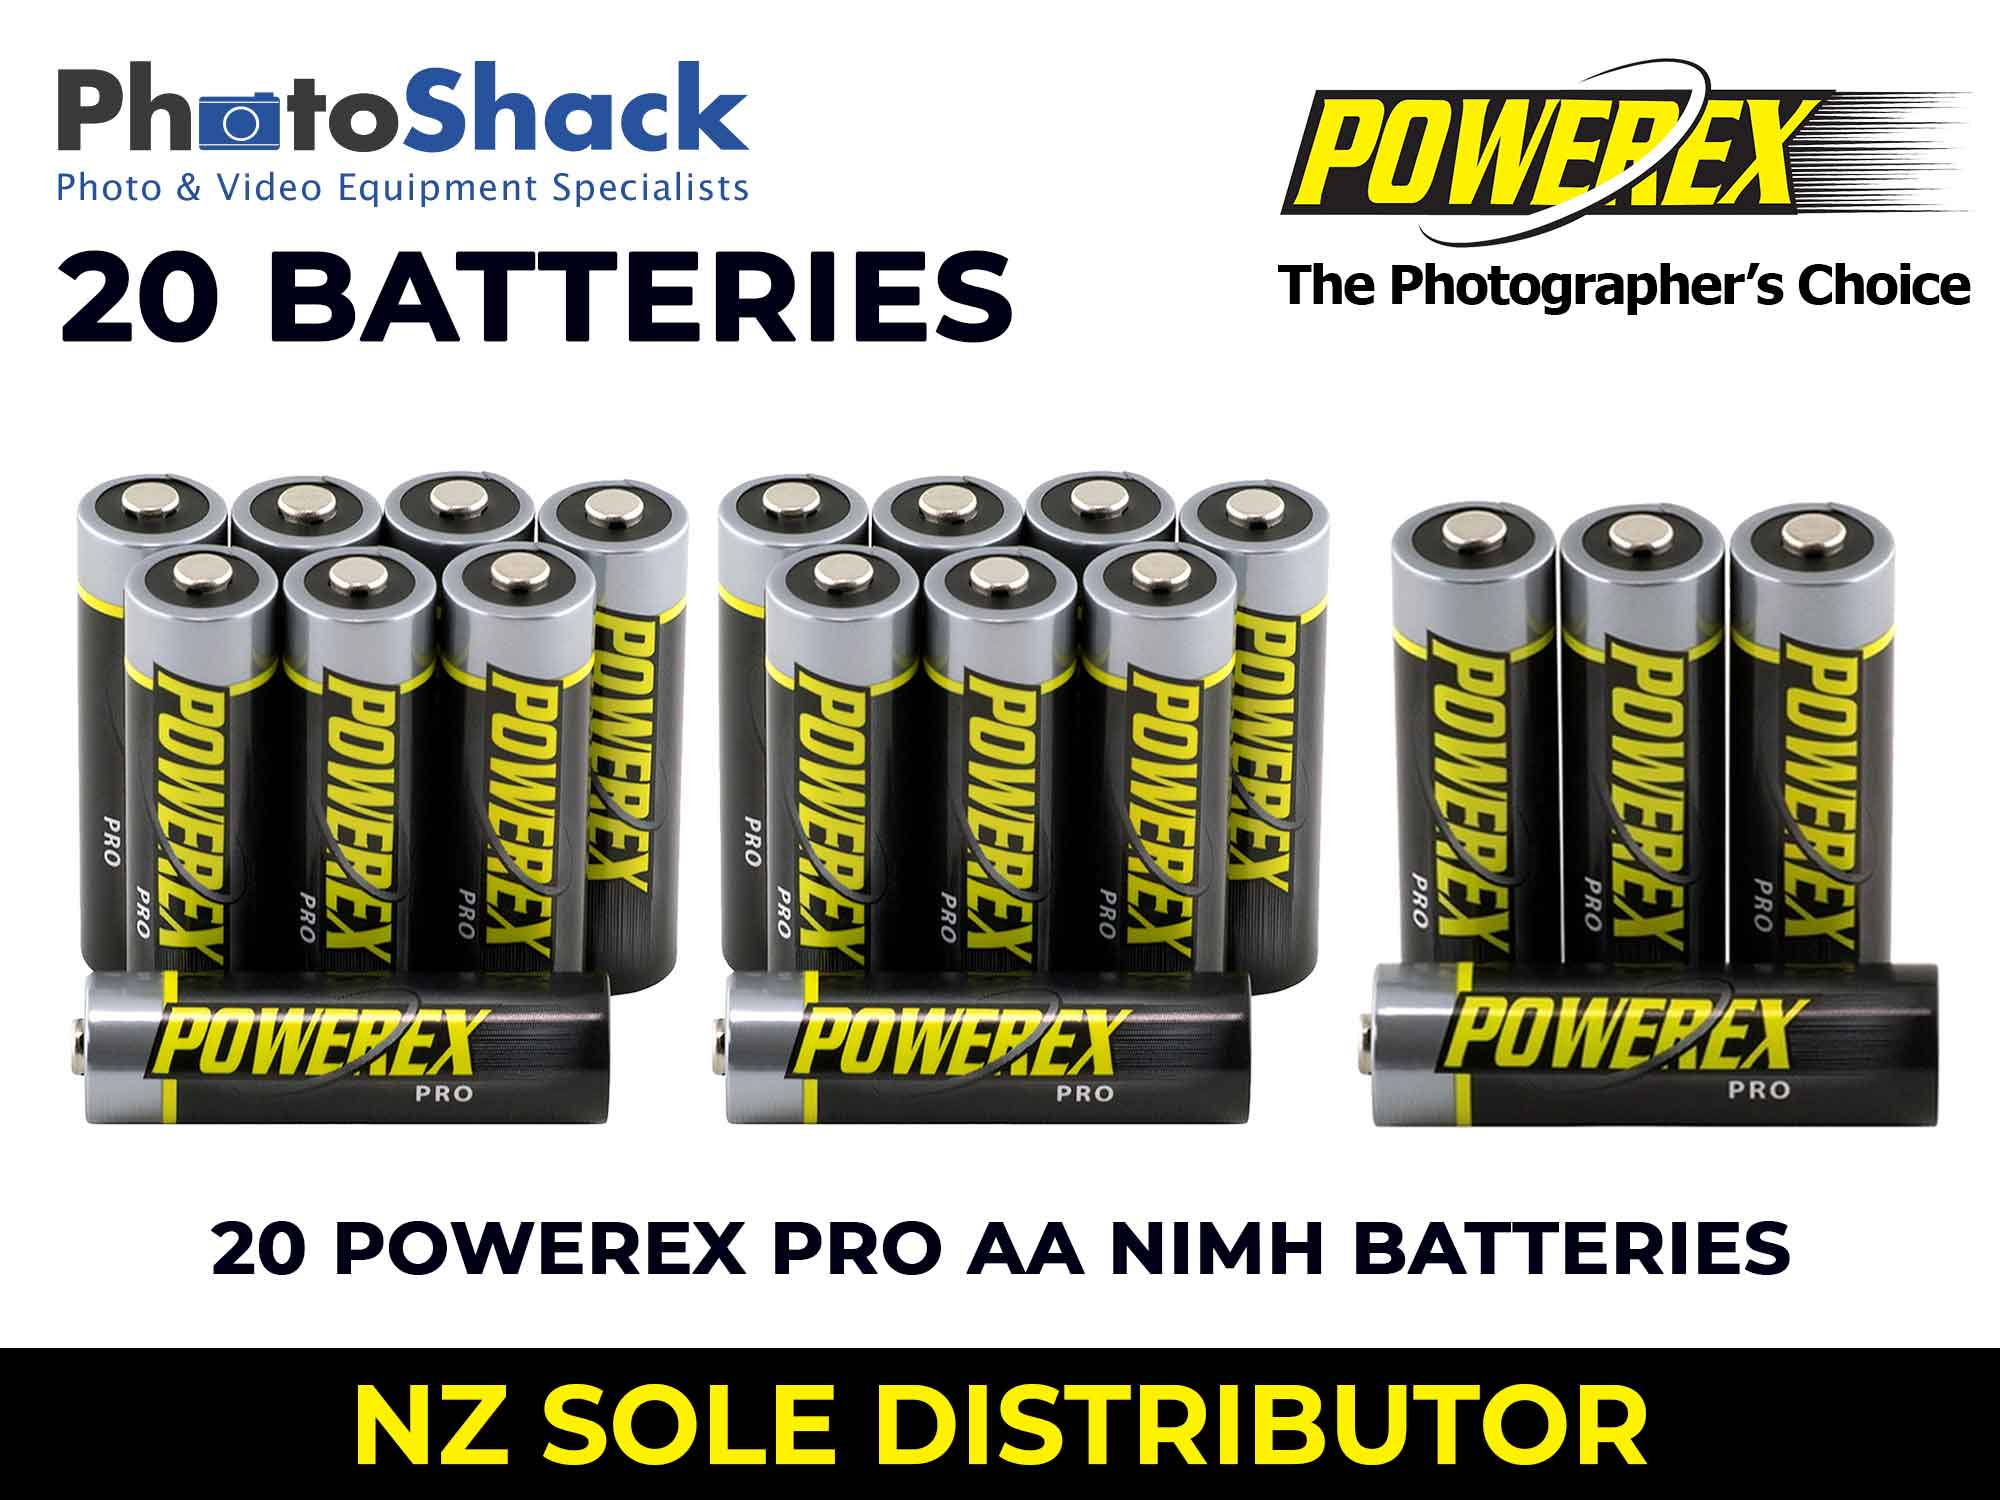 Maha Powerex PRO - AA Batteries - 2,700mAh 20 Batteries